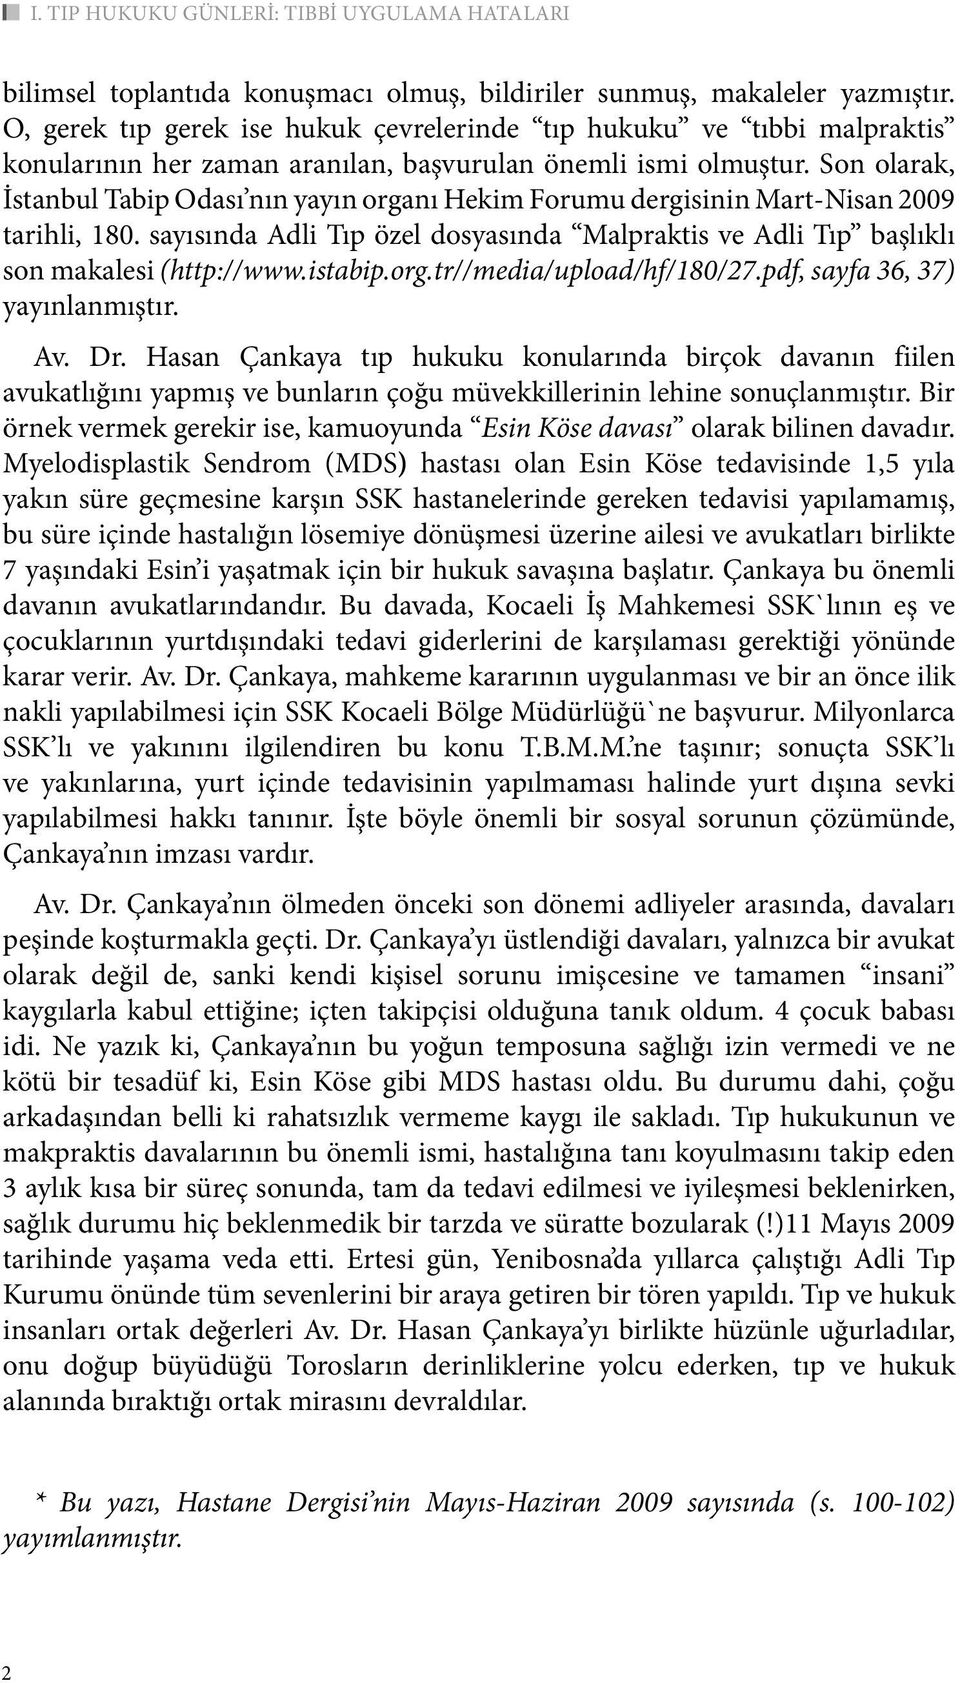 Son olarak, İstanbul Tabip Odası nın yayın organı Hekim Forumu dergisinin Mart-Nisan 2009 tarihli, 180. sayısında Adli Tıp özel dosyasında Malpraktis ve Adli Tıp başlıklı son makalesi (http://www.